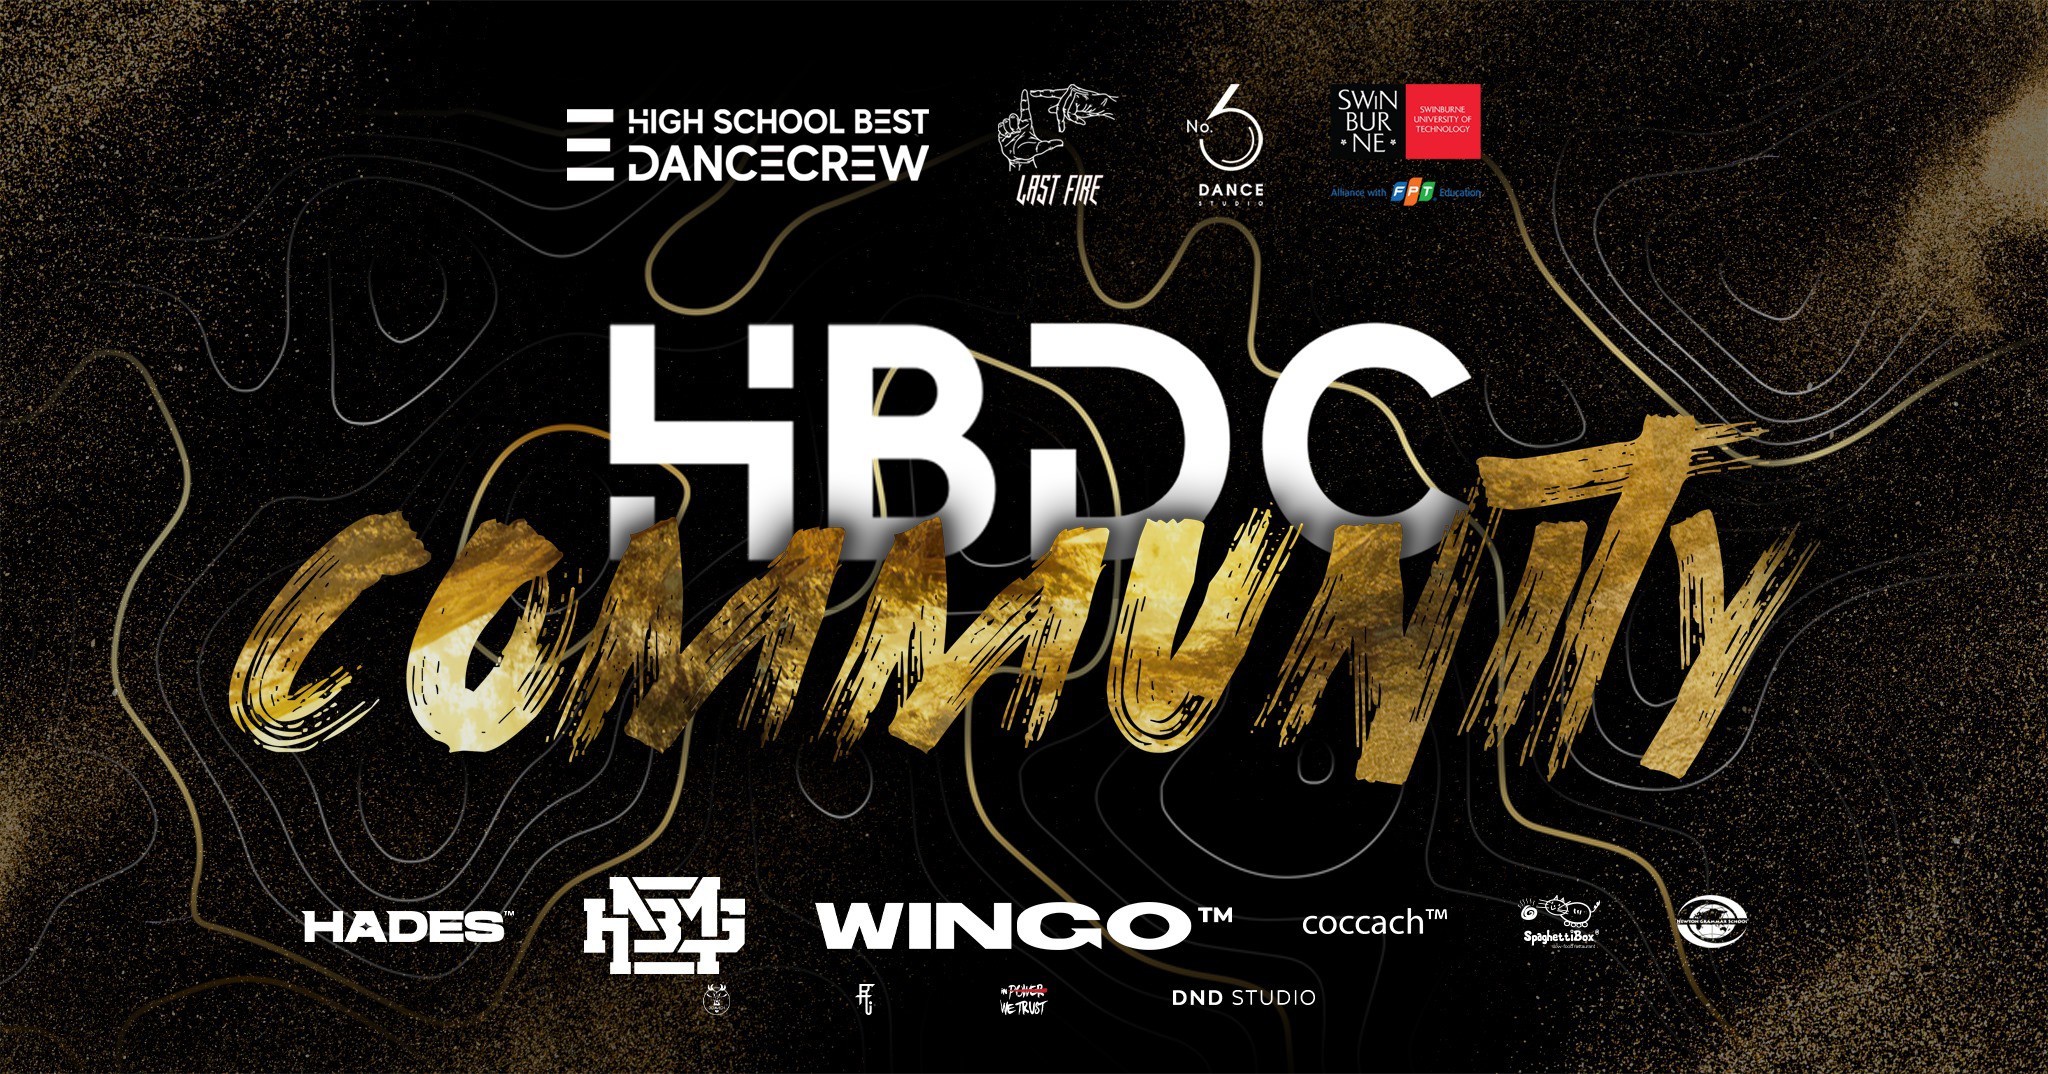 HBDC Community Battle 2021 - Giải đấu 2vs2 dành cho các bạn trẻ đam mê Hiphop